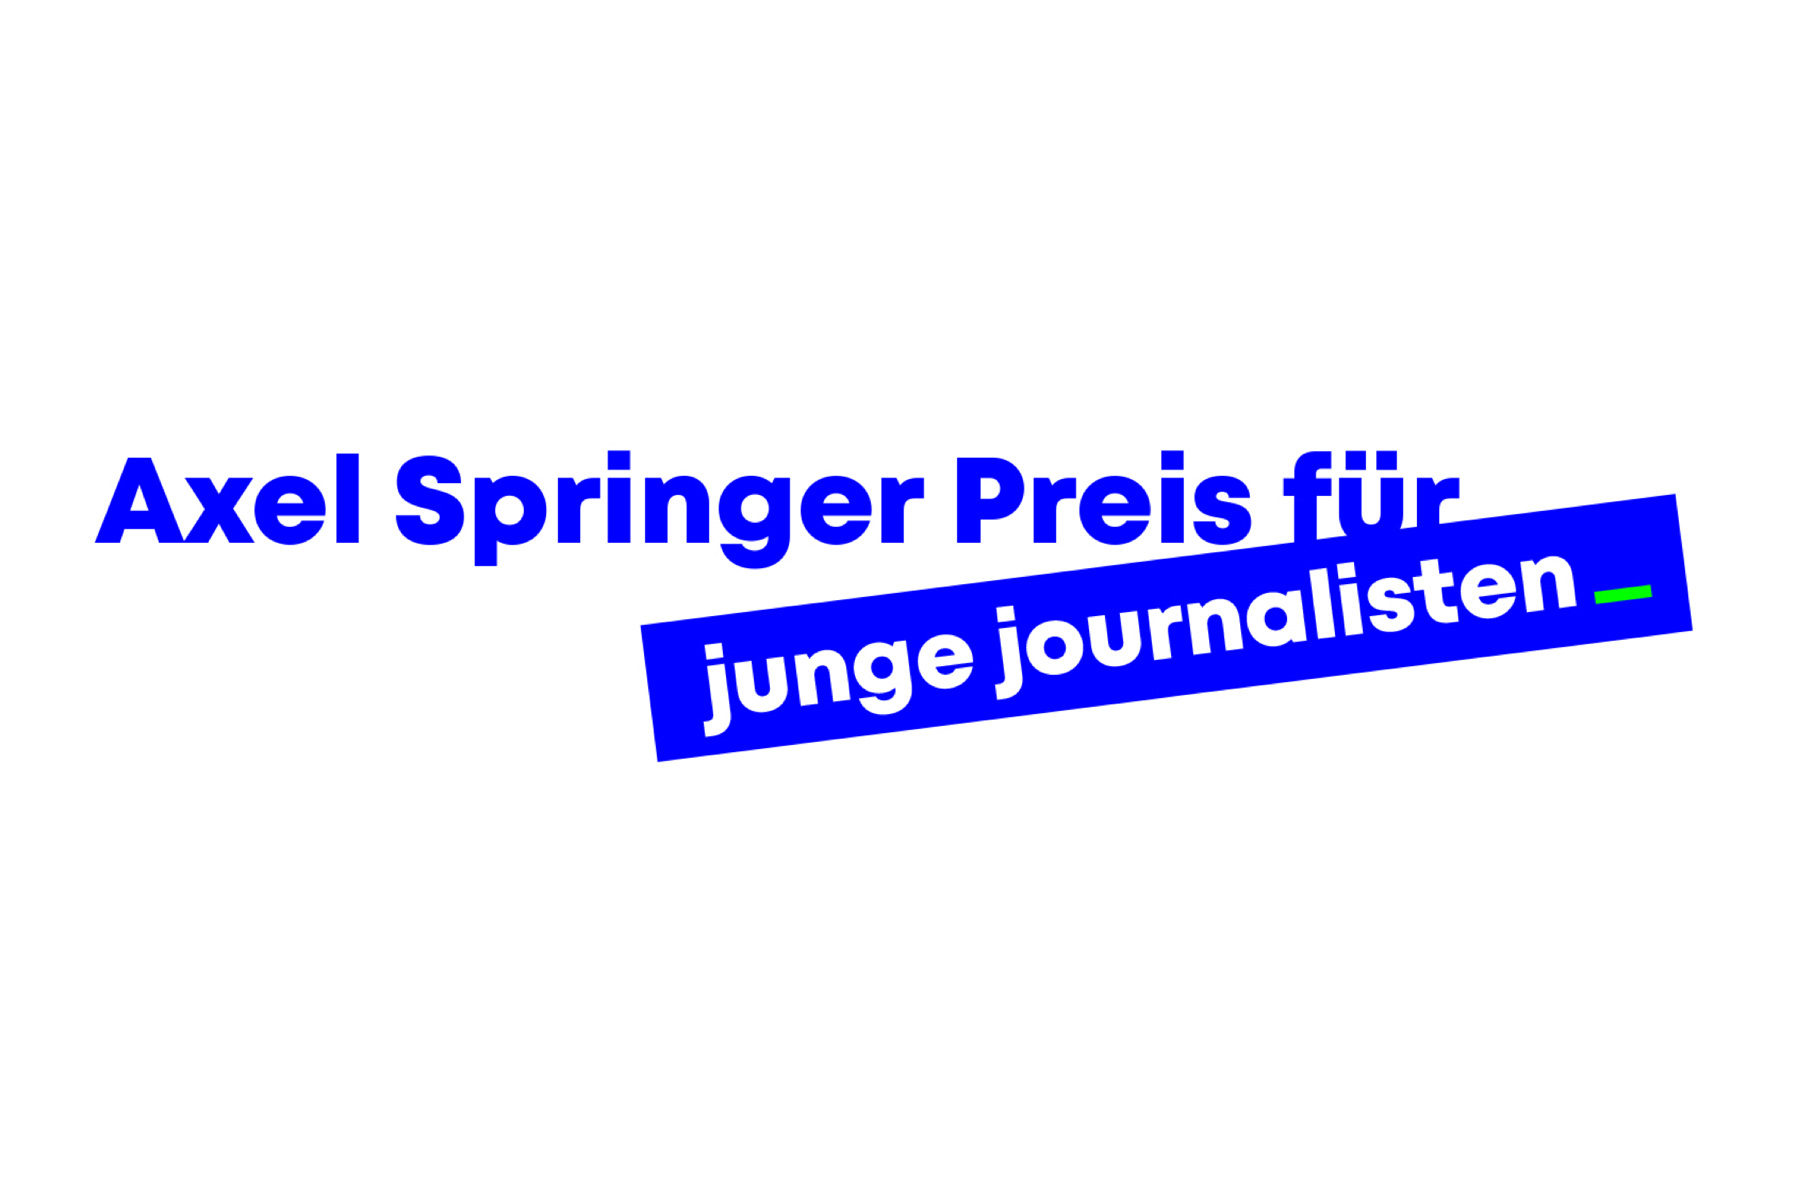 (c) Axel-springer-preis.de